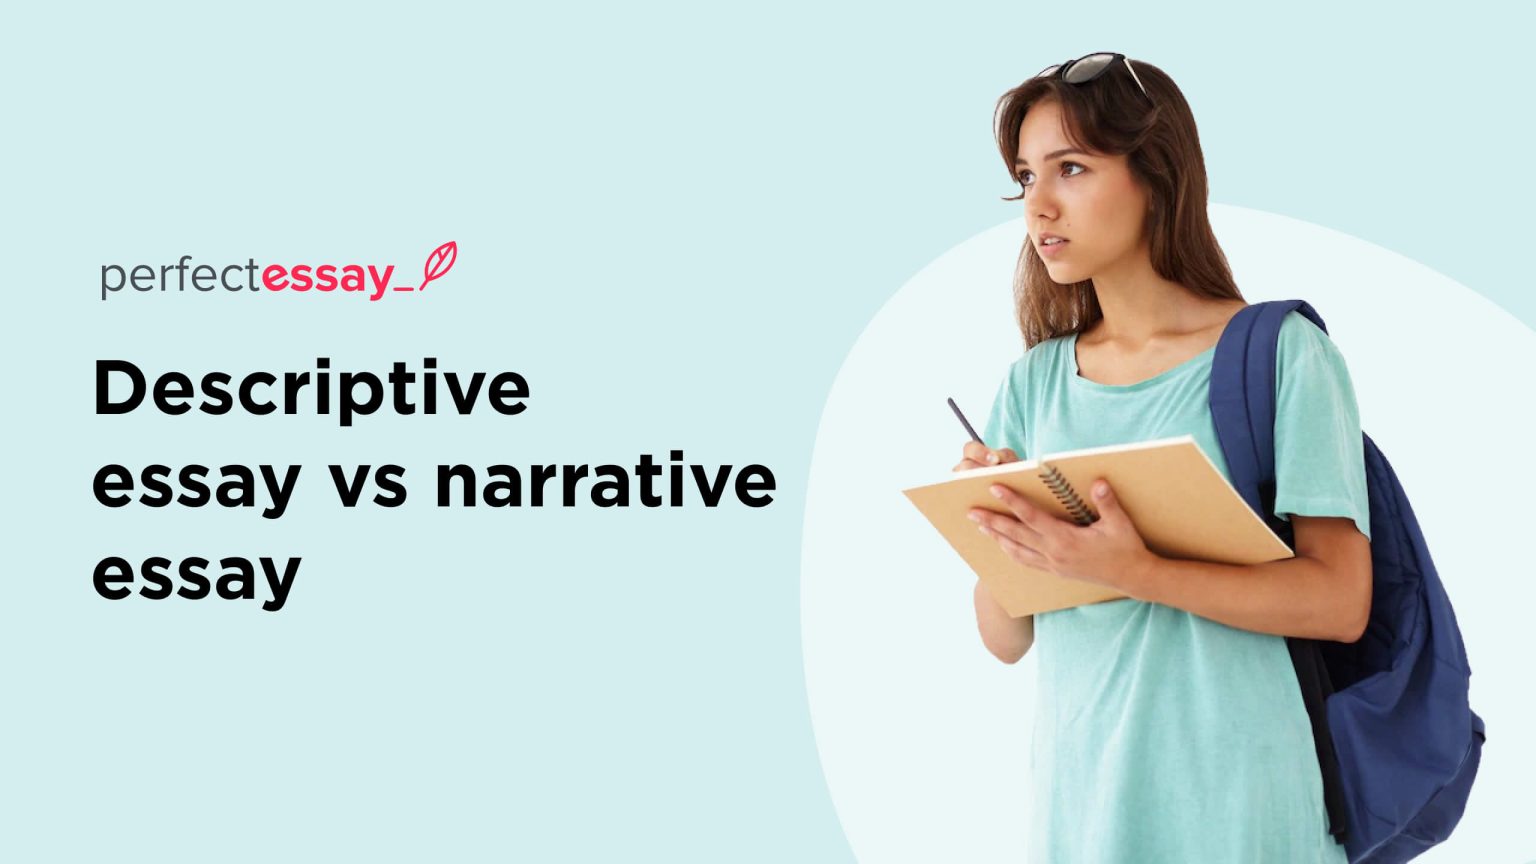 narrative vs descriptive essay difference